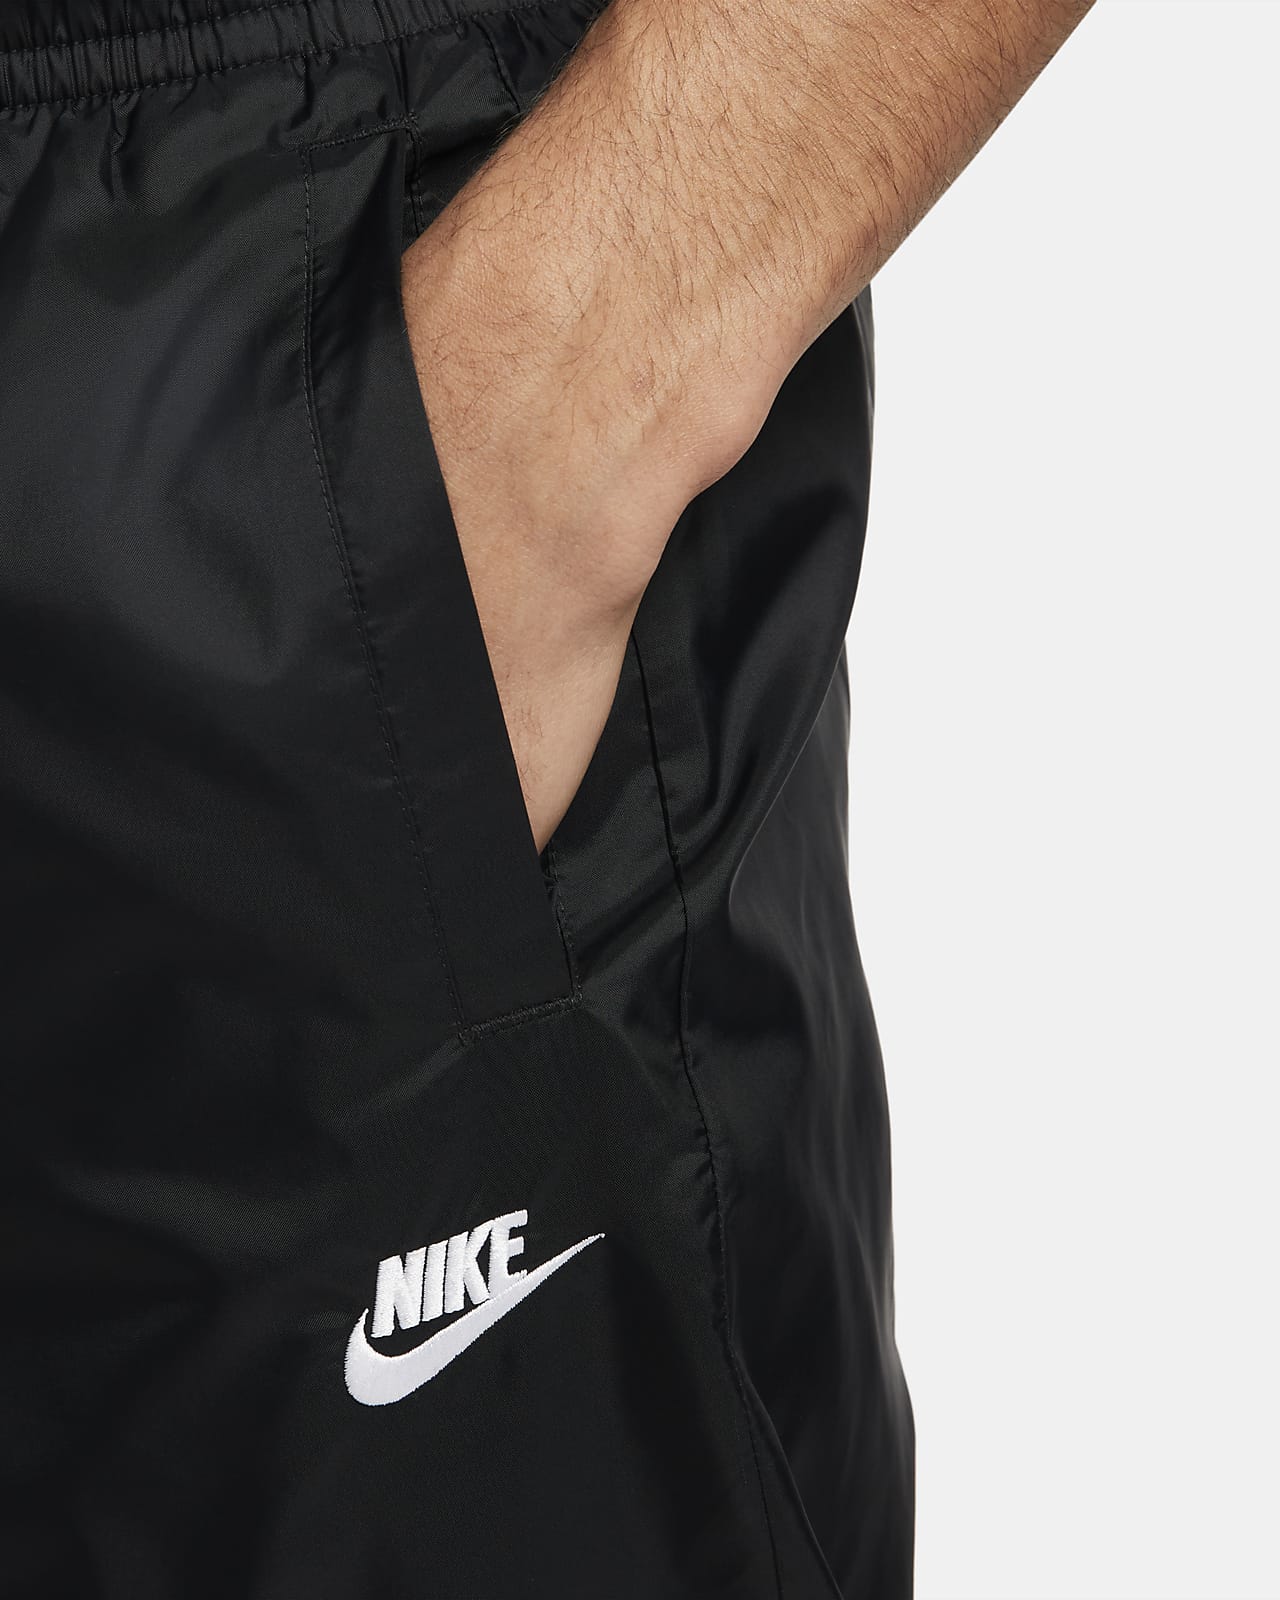 Survêtements Homme, Nike Ensemble de Survêtement Slayer Tissé Blanc